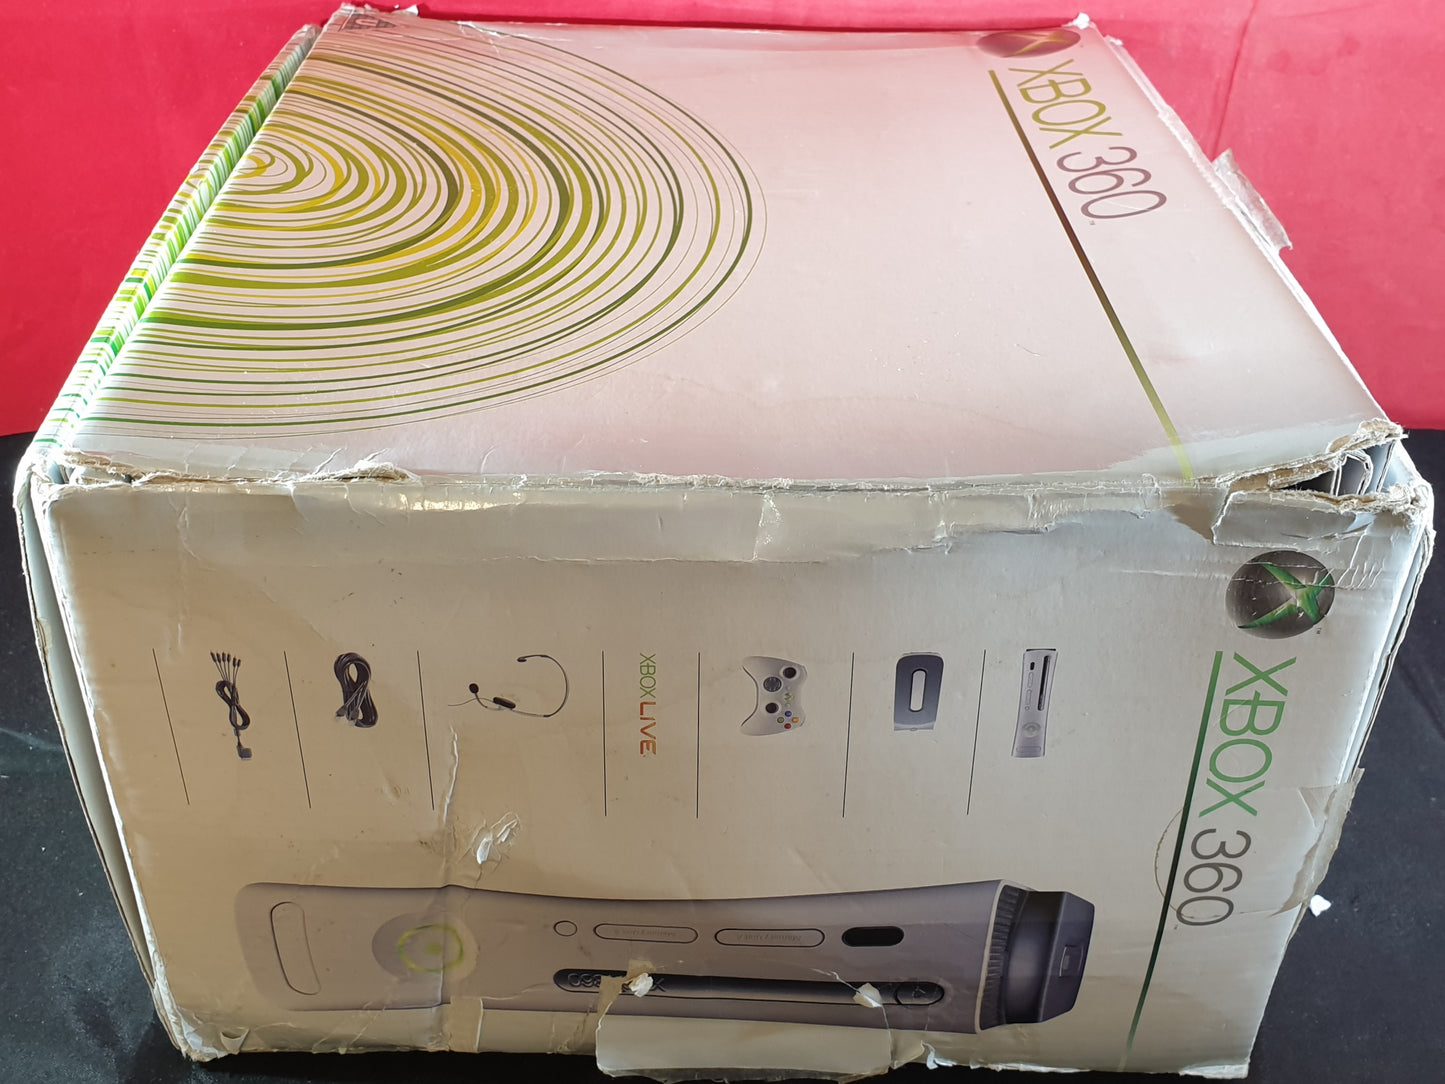 Boxed Microsoft Xbox 360 Console